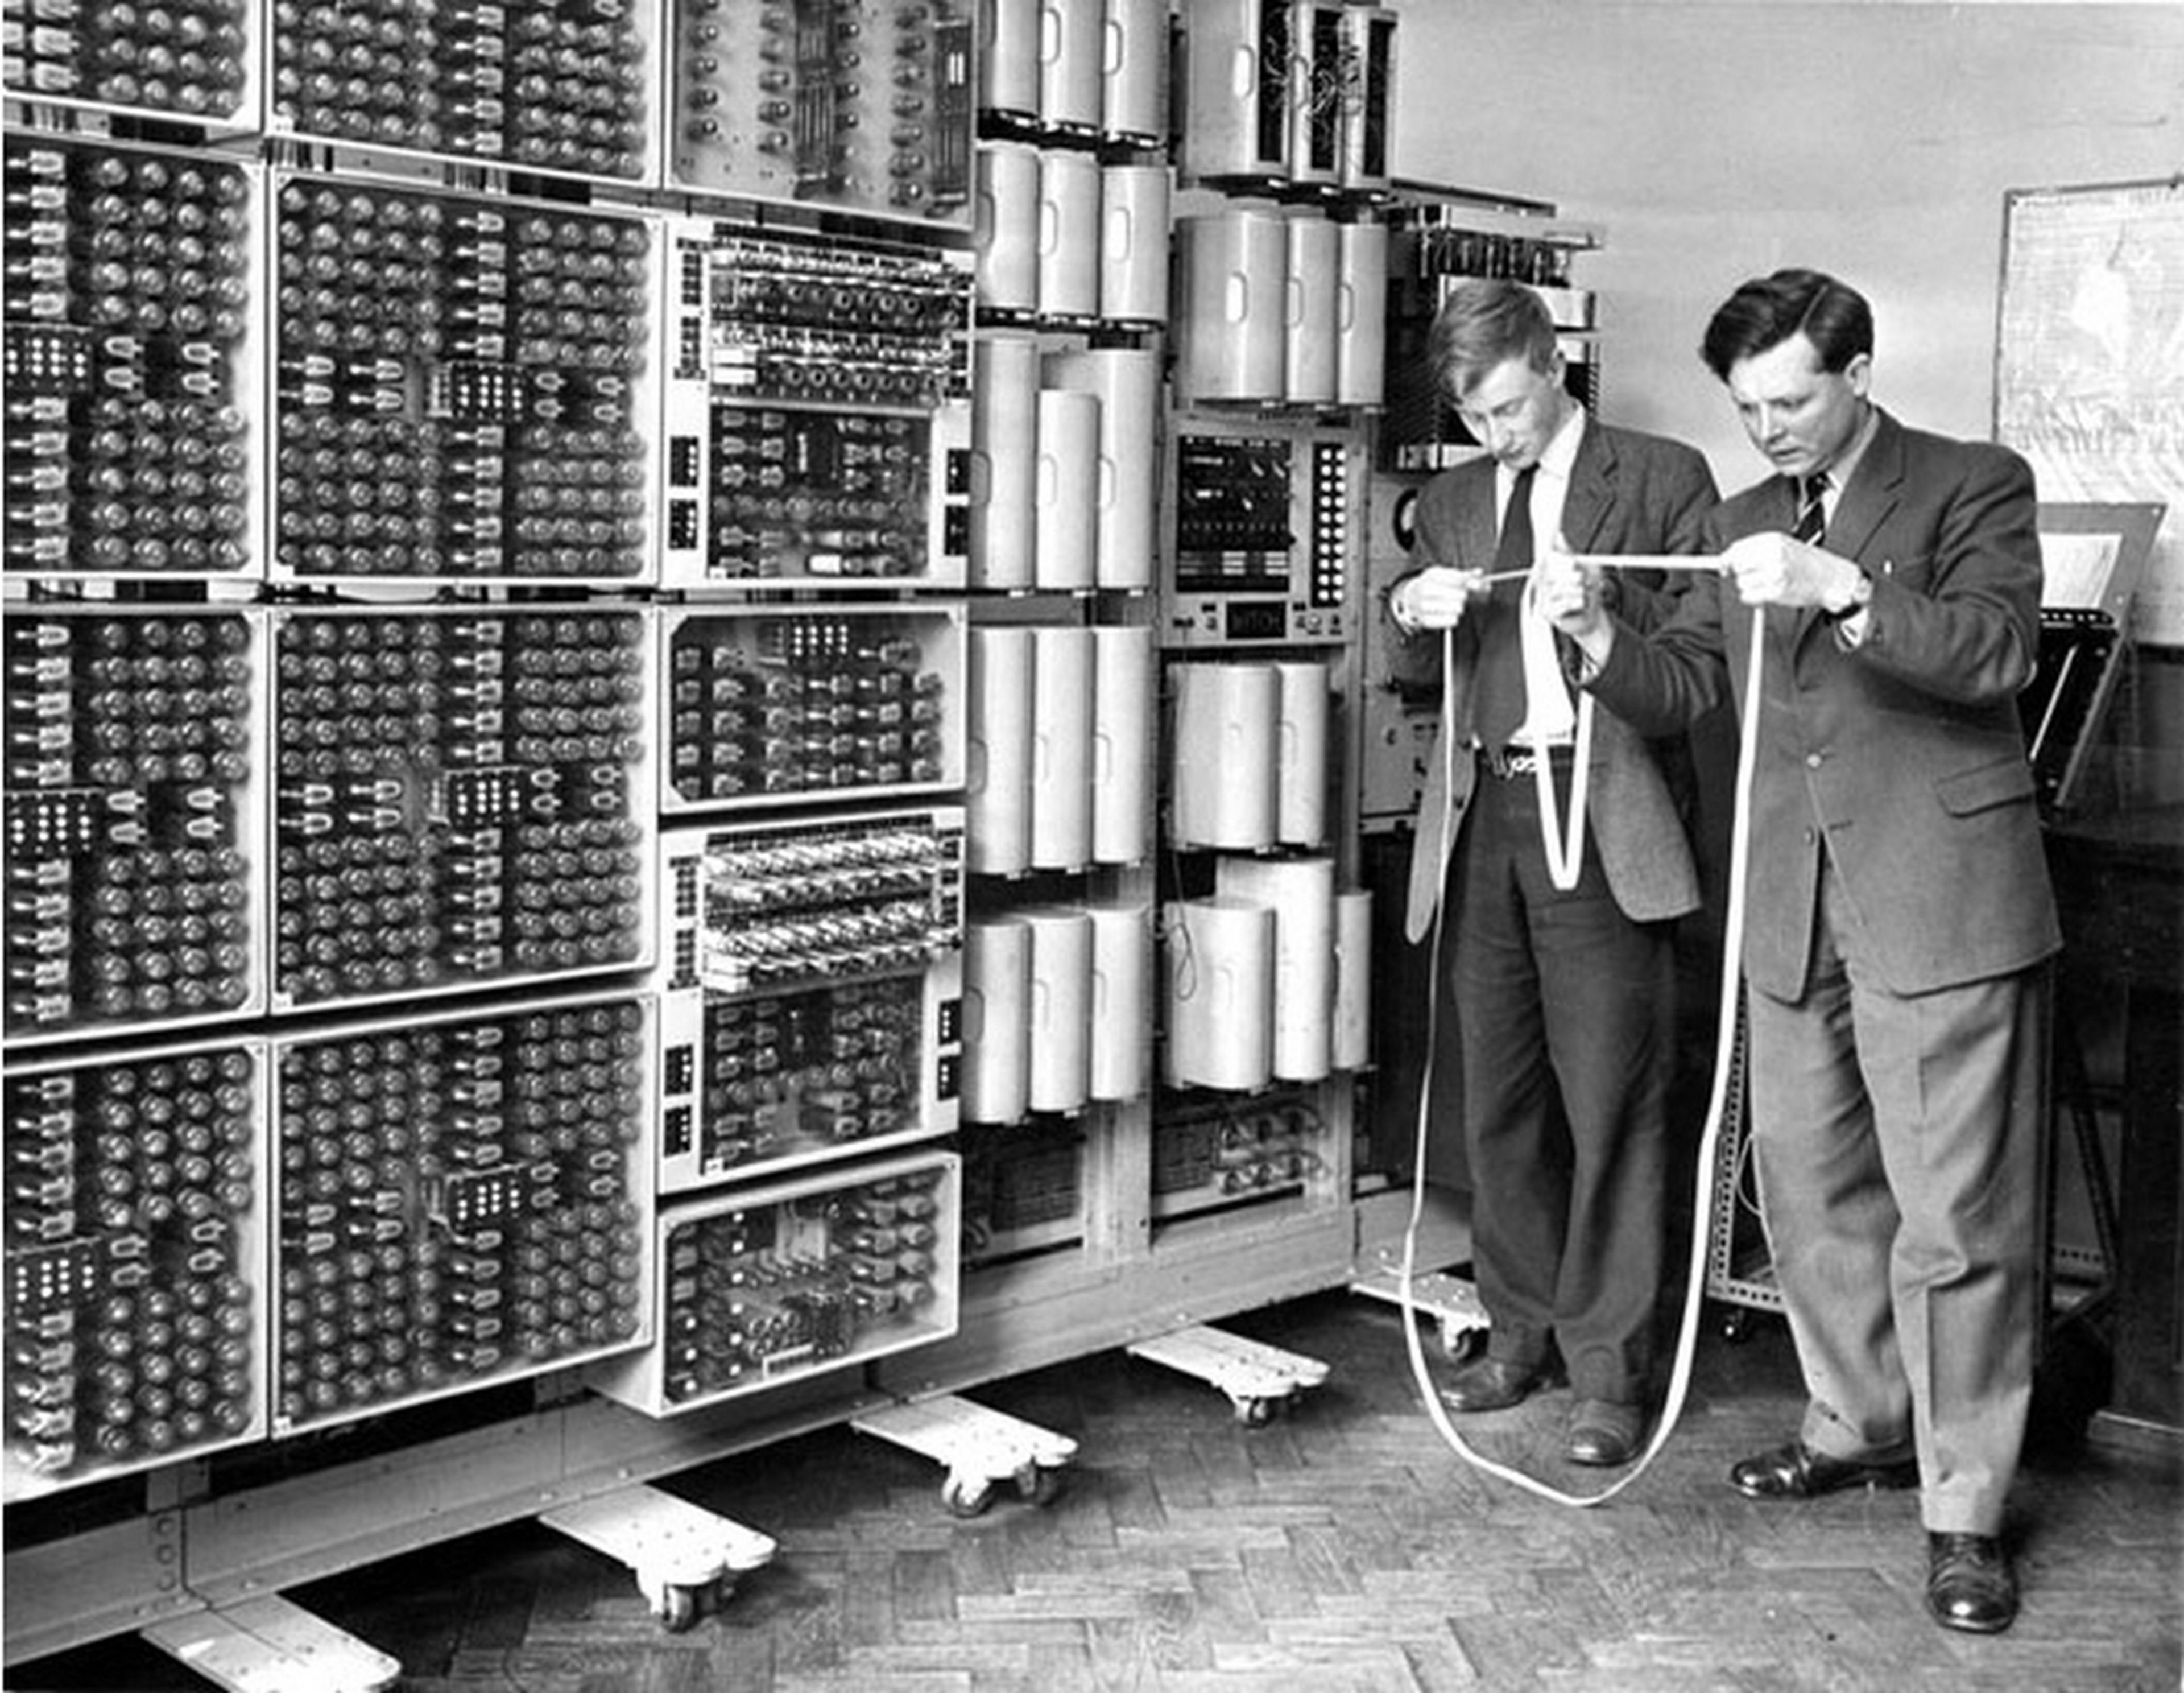 El ordenador más antiguo que aún funciona pesa 2,5 toneladas, y tarda 10 segundos en hacer una multiplicación